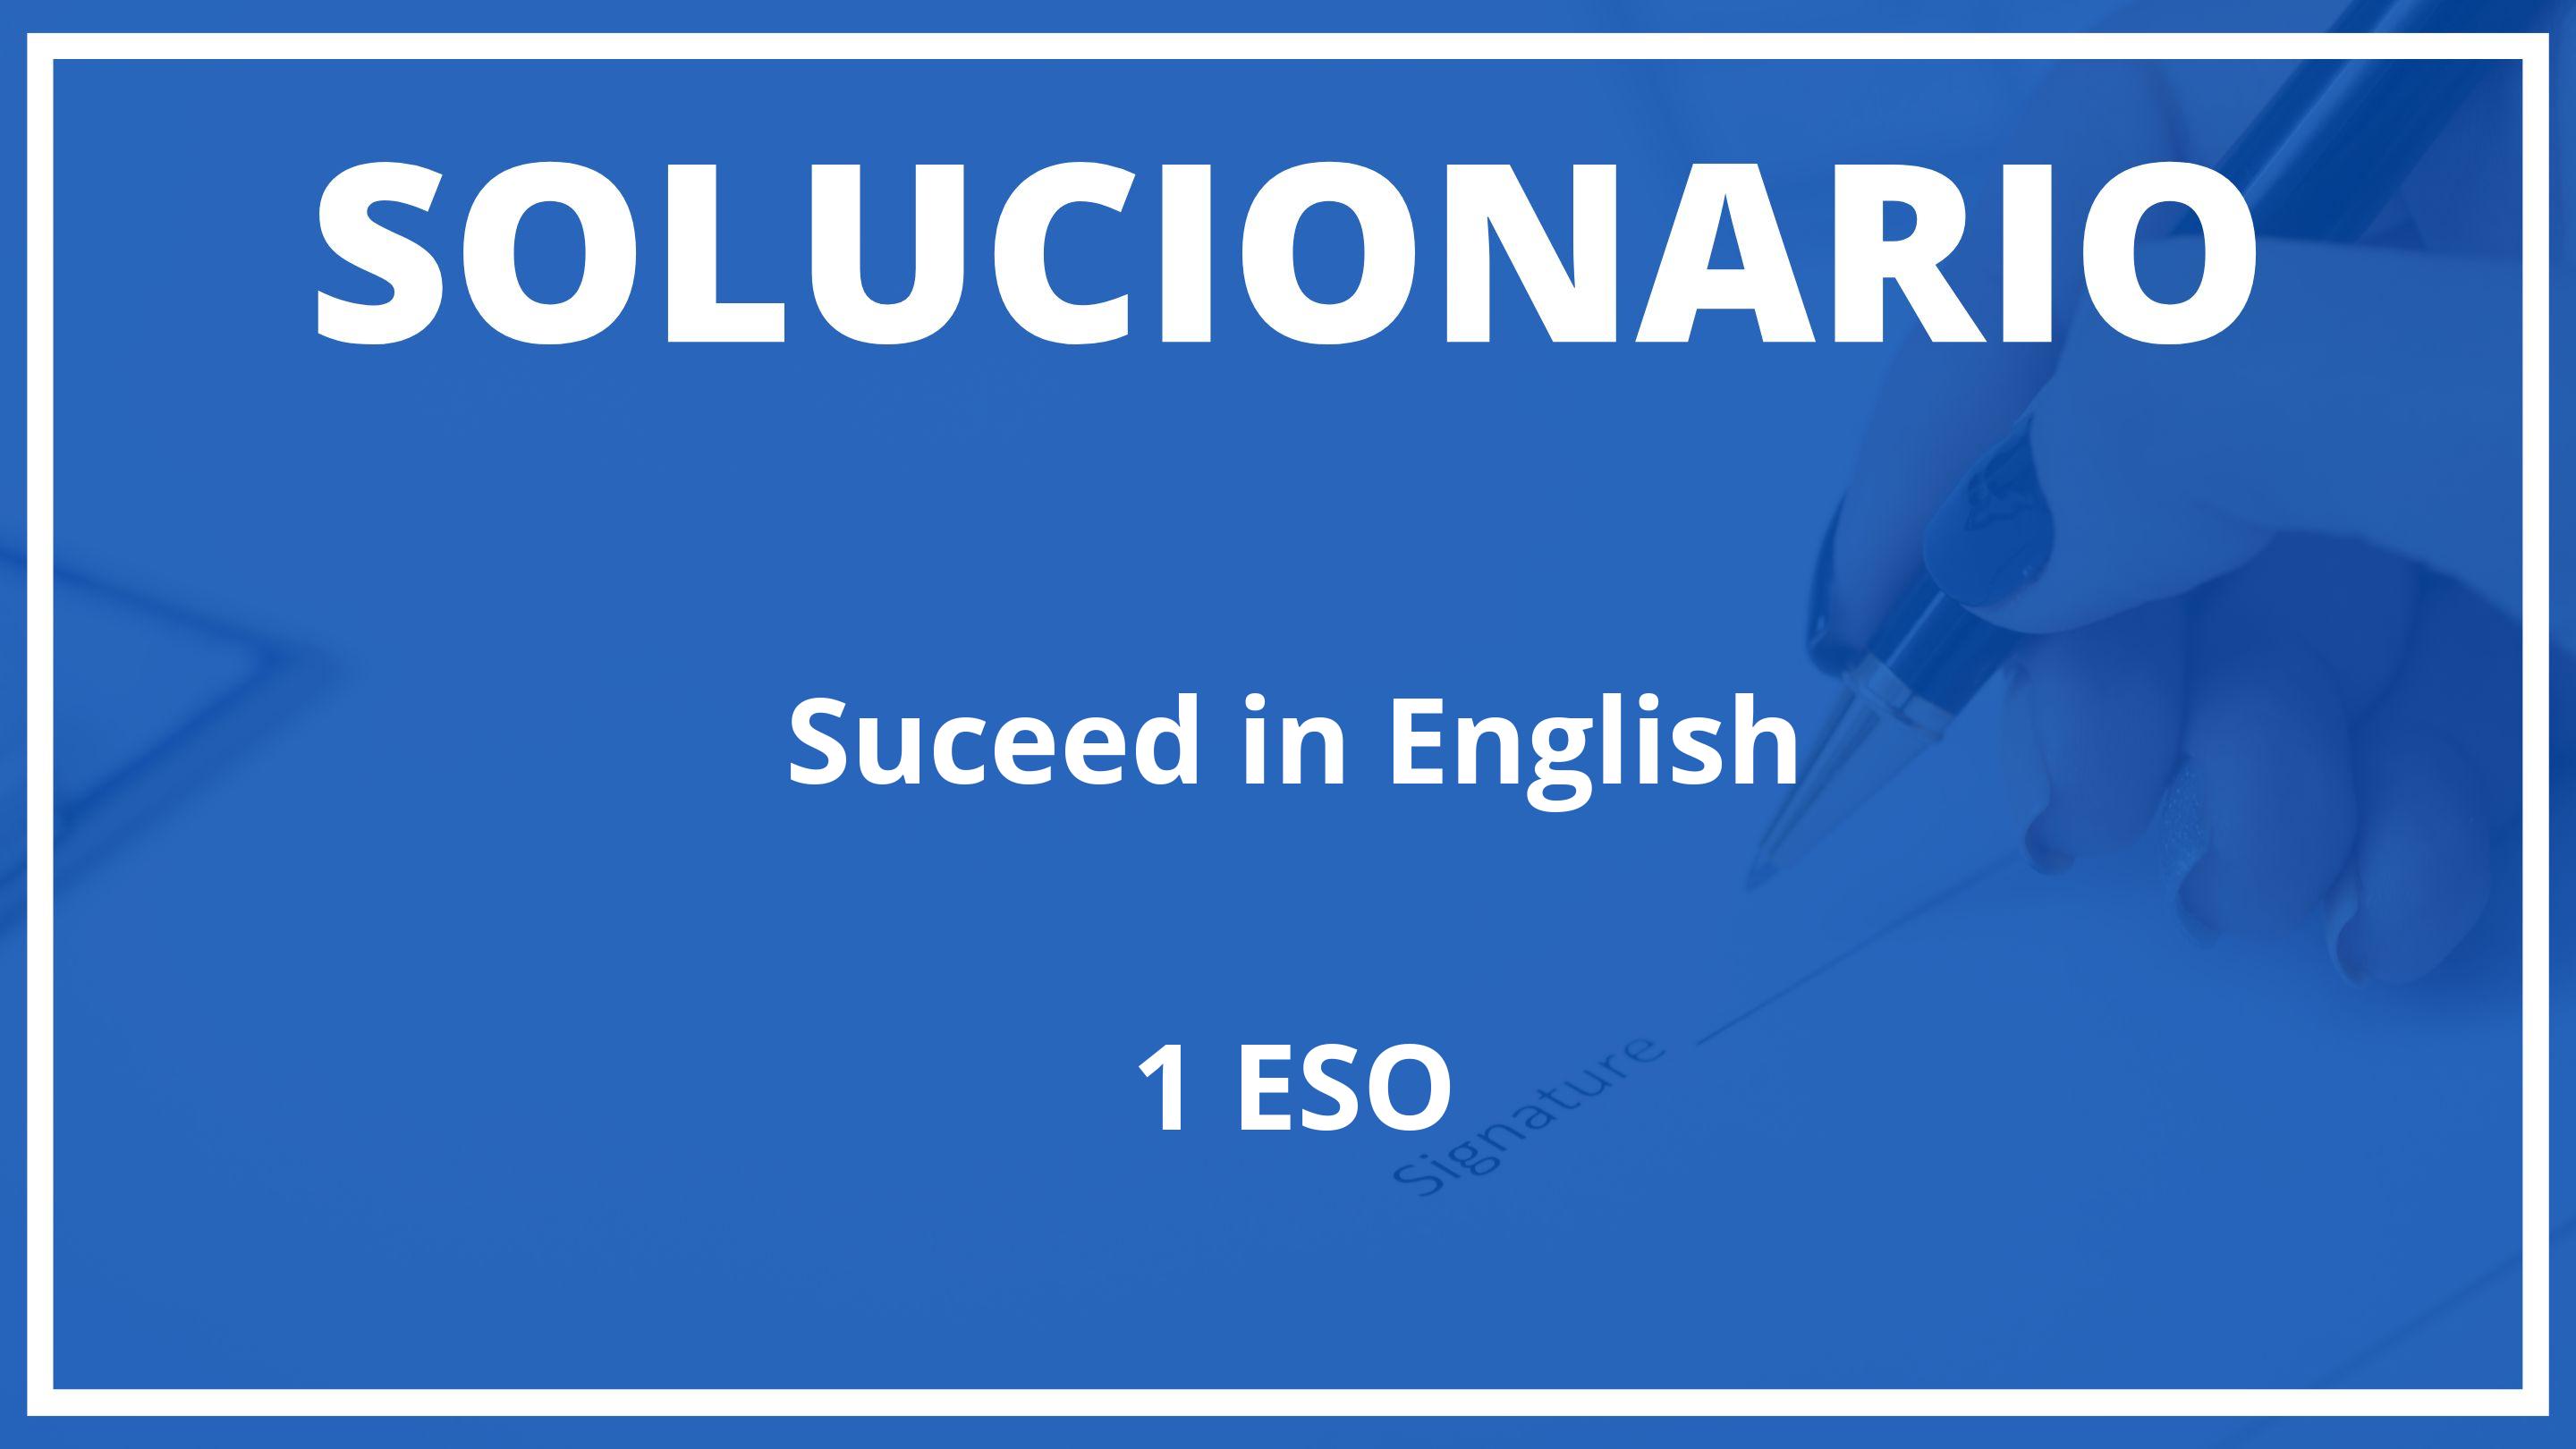 Solucionario Suceed in English  Oxford 1 ESO